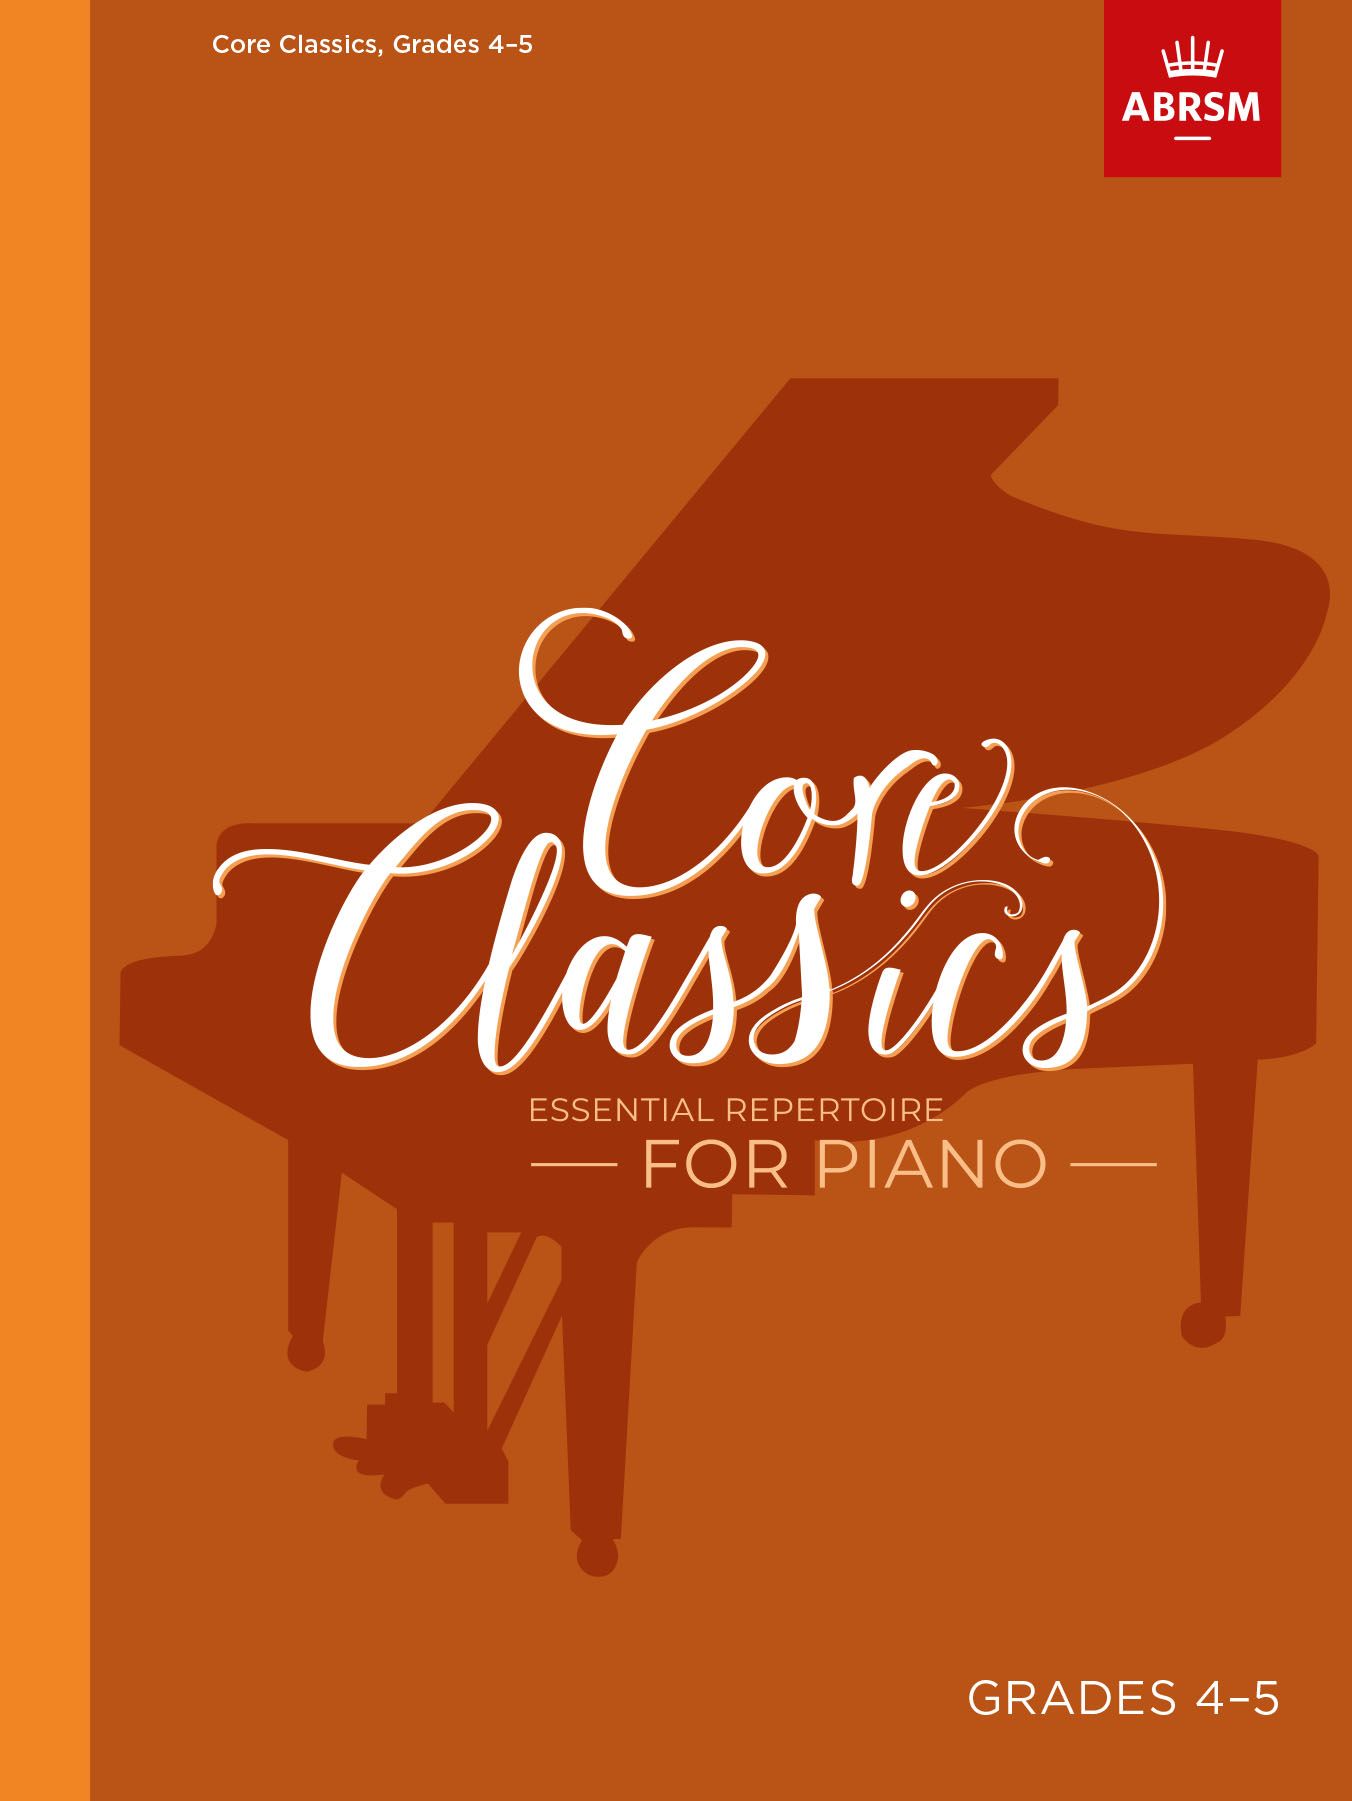 Core Classics - Grades 4-5: Essential Repertoire for Piano